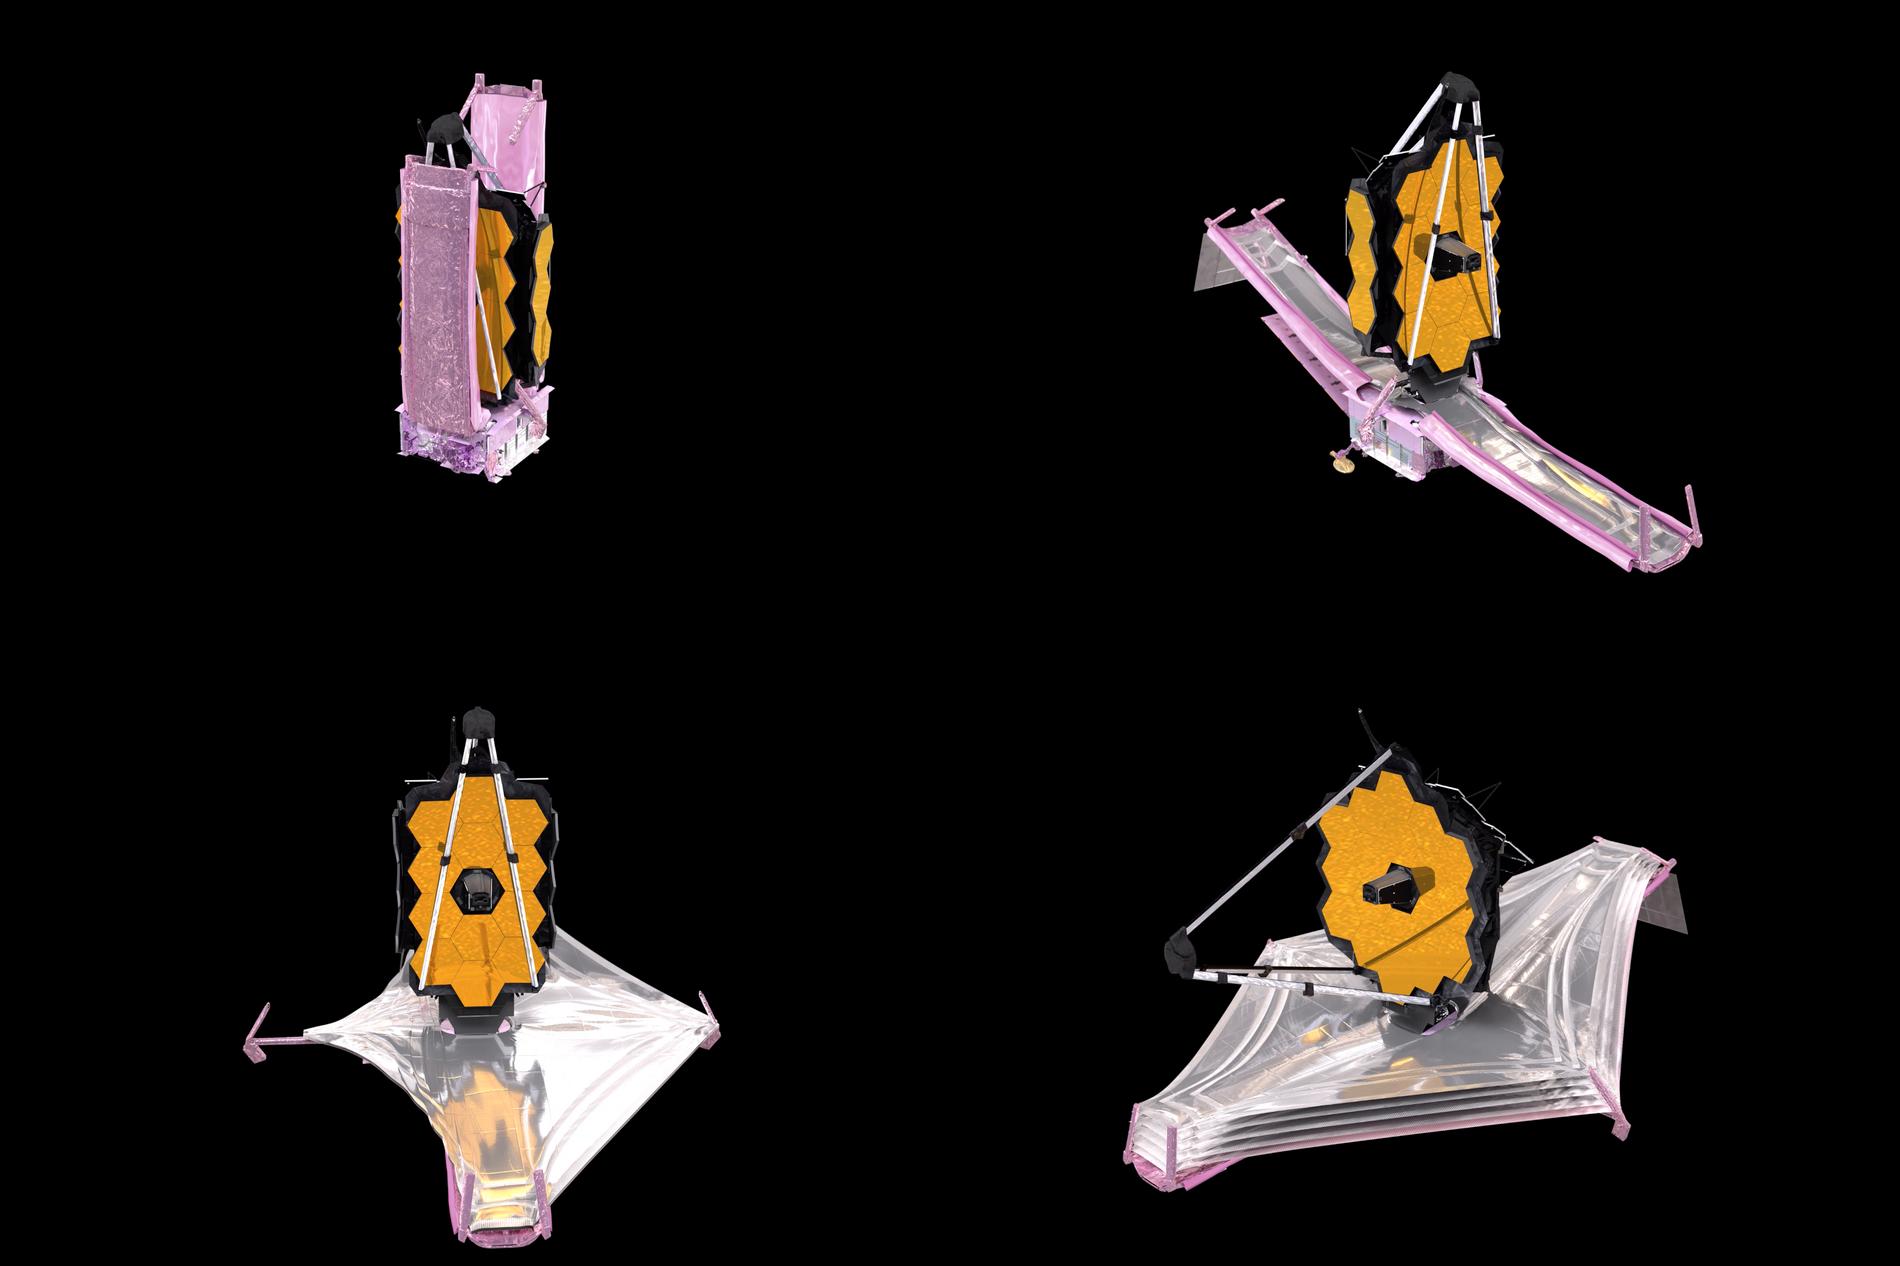 Bilder ur NASA:s animation som visar hur komponenterna i rymdteleskopet James Webb utvecklats. Teleskopet är så stort att det måste vikas i origami-stil för att passa in i noskonen på Ariane-raketen.